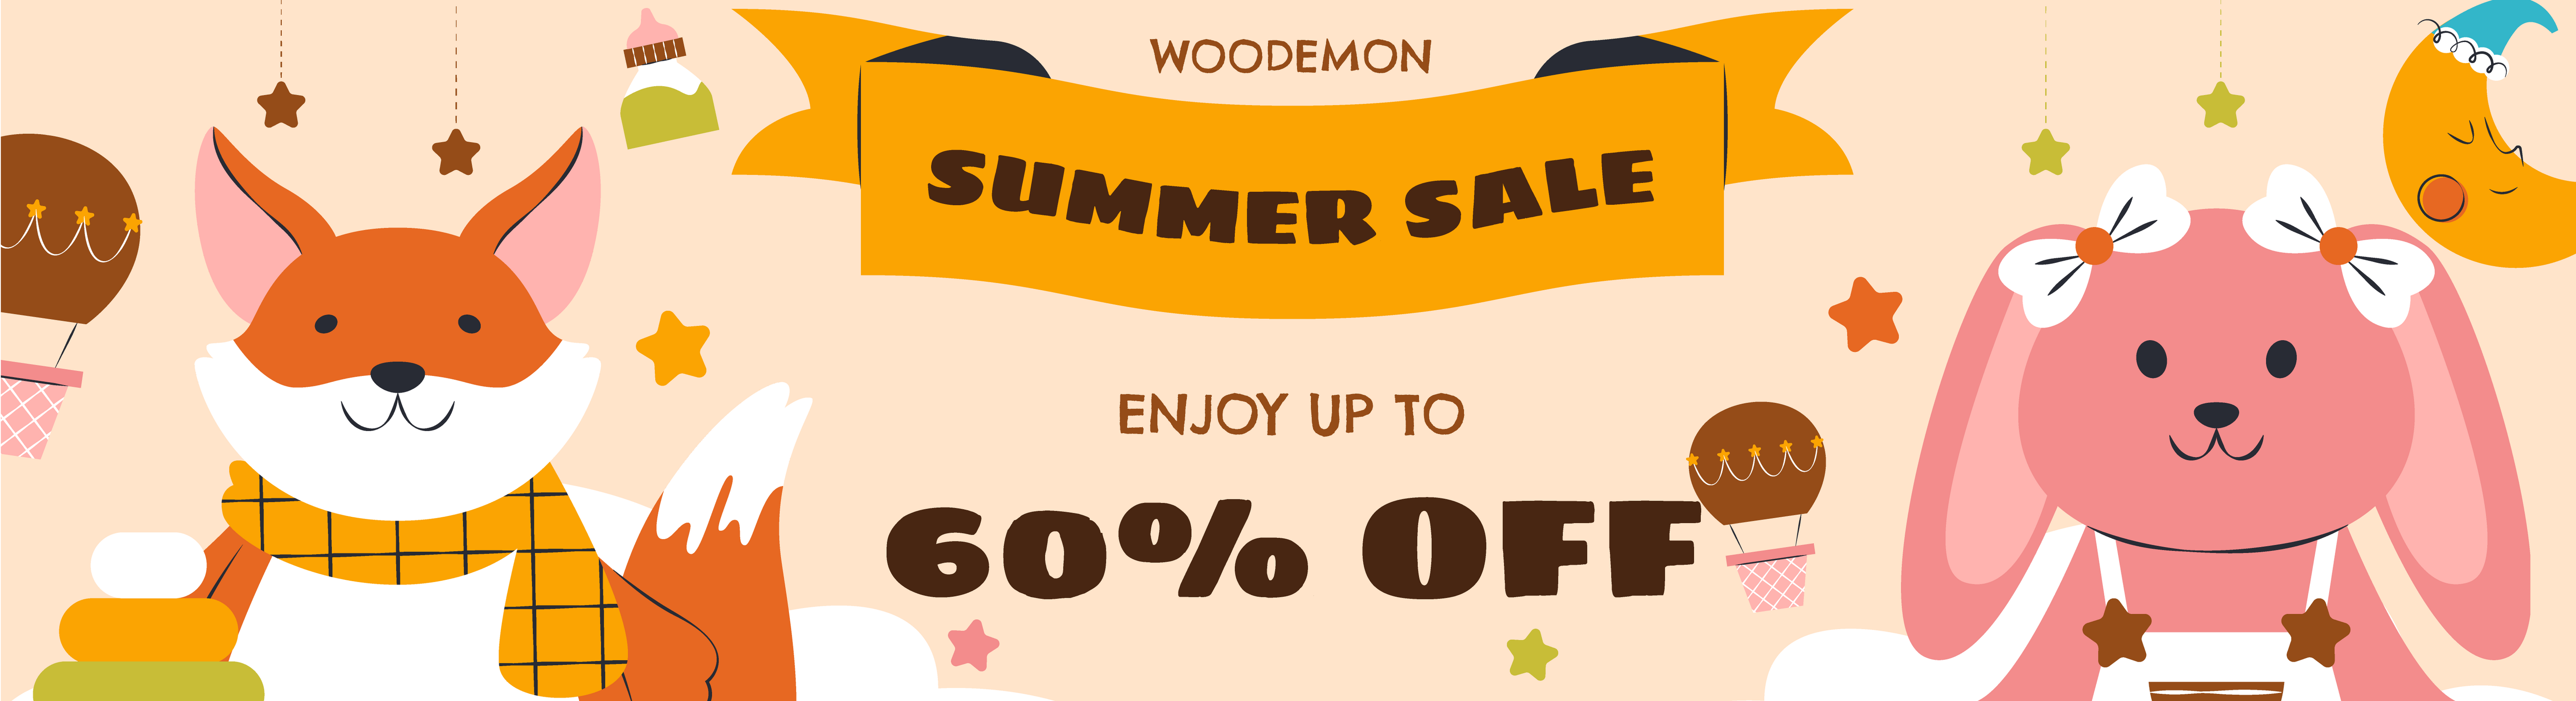 Woodemon_Banner_7.2_Summer Sale